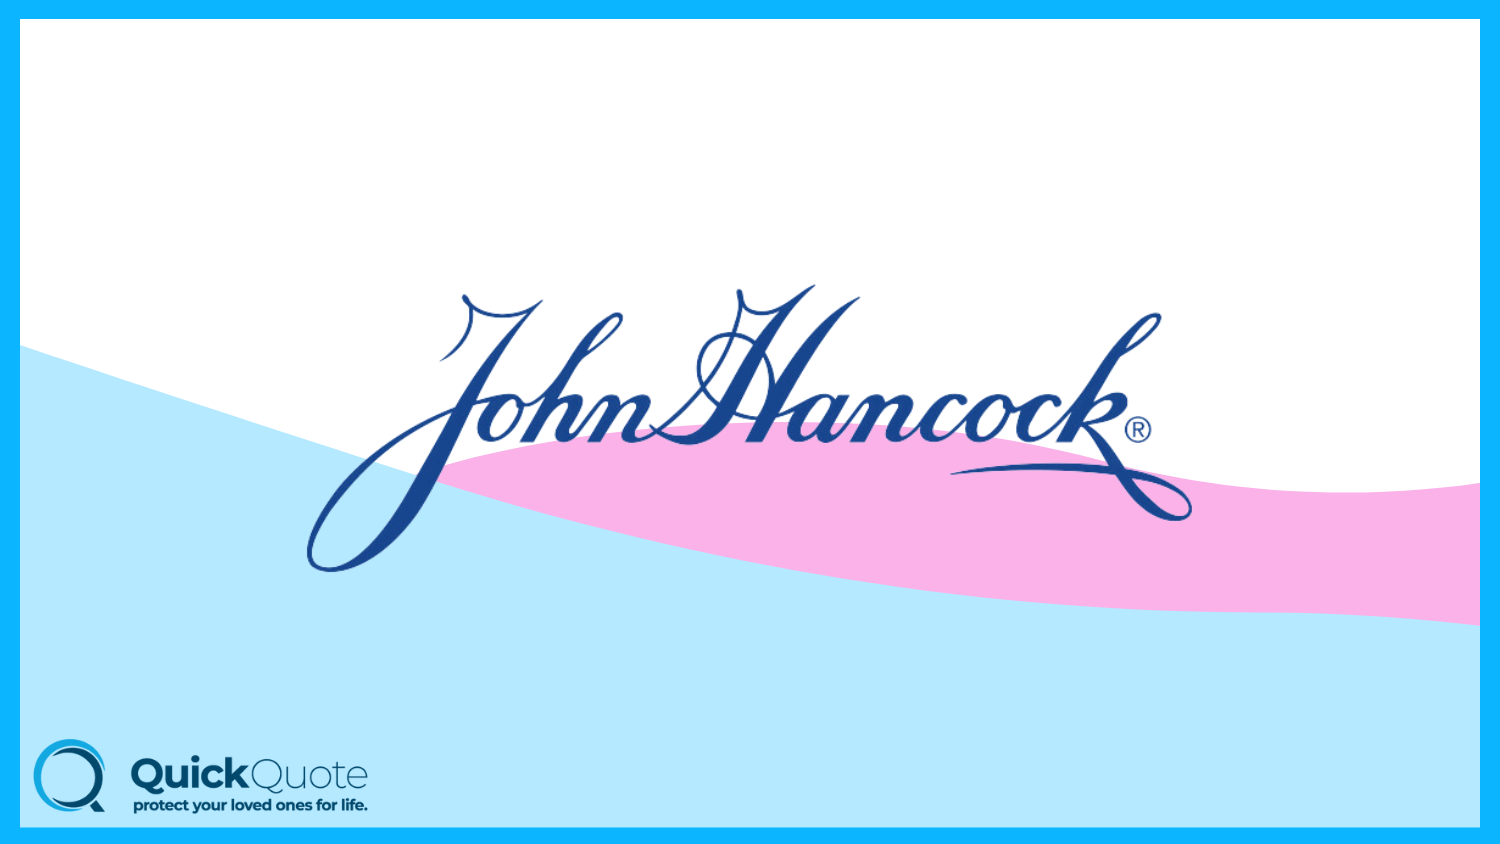 John Hancock: Best Life Insurance for Alcoholics